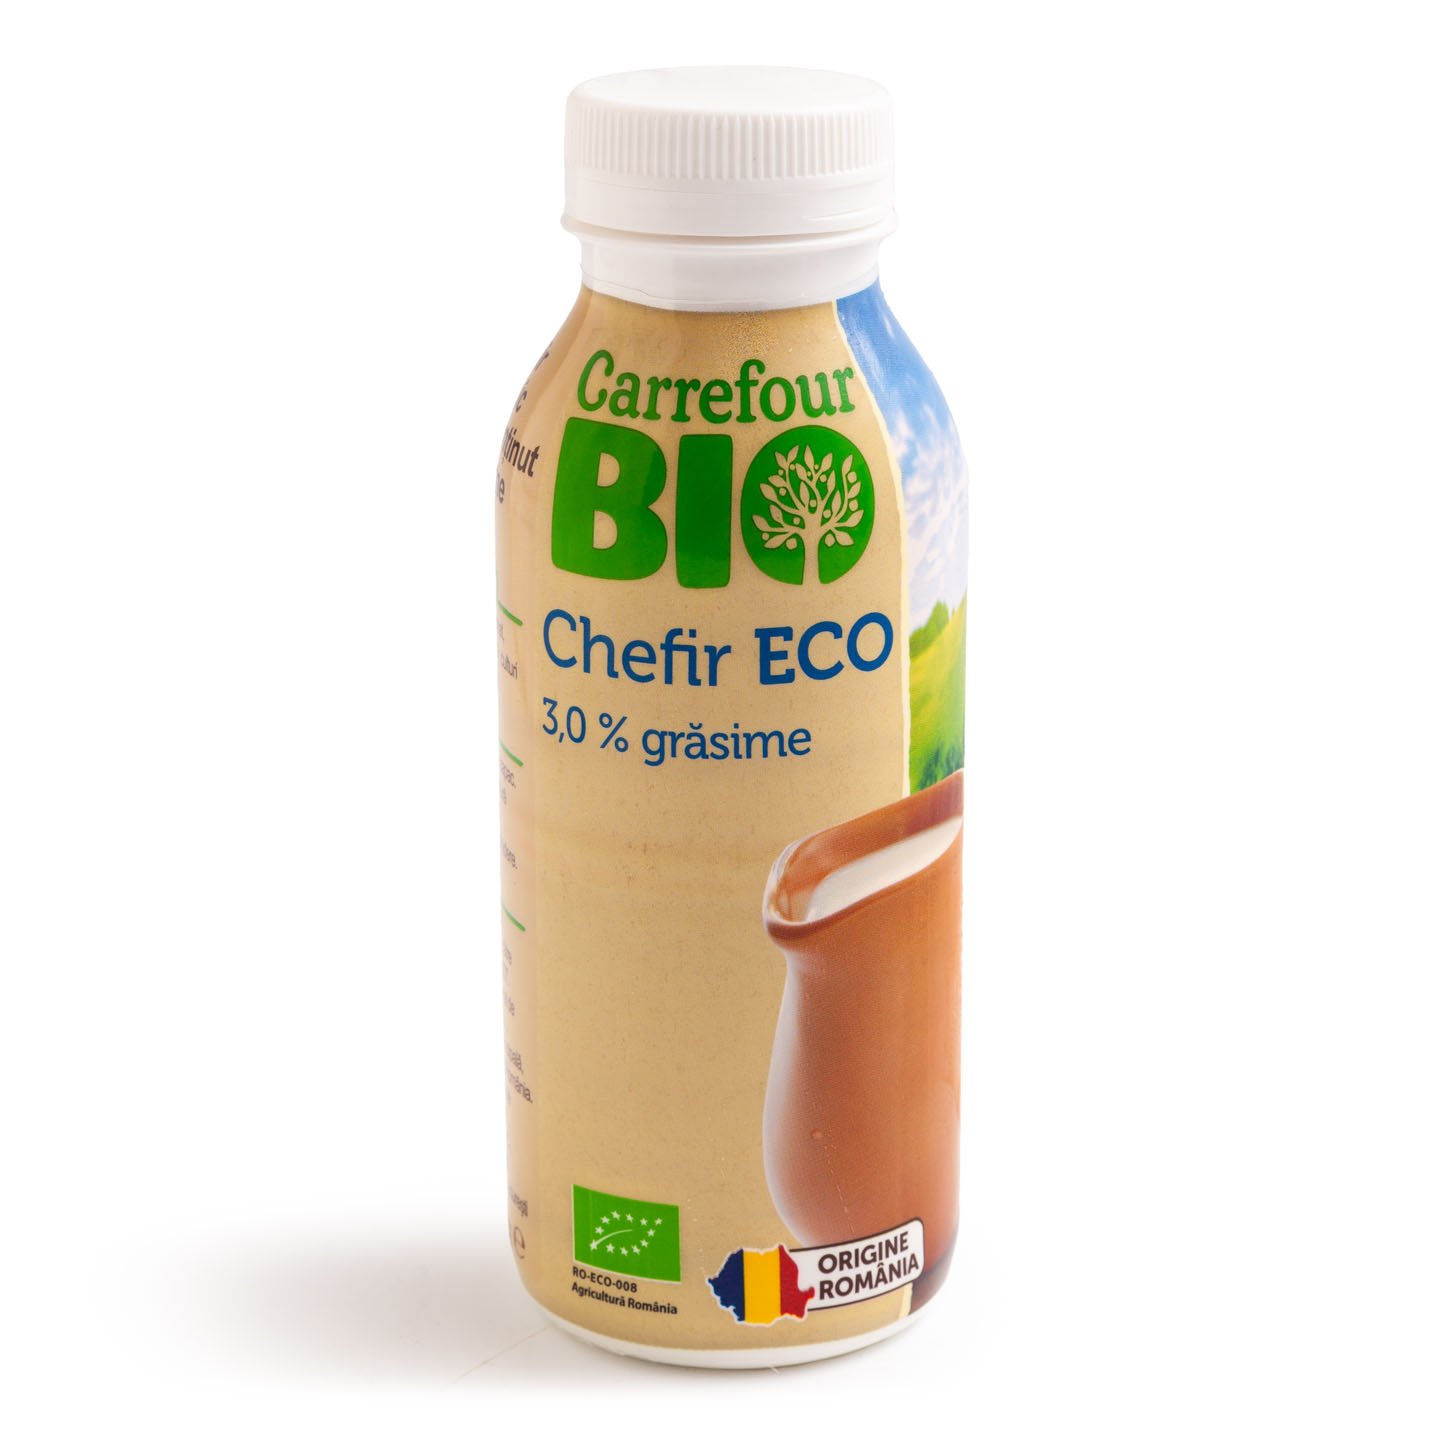 Chefir ecologic 3% grăsime Carrefour Bio 330g